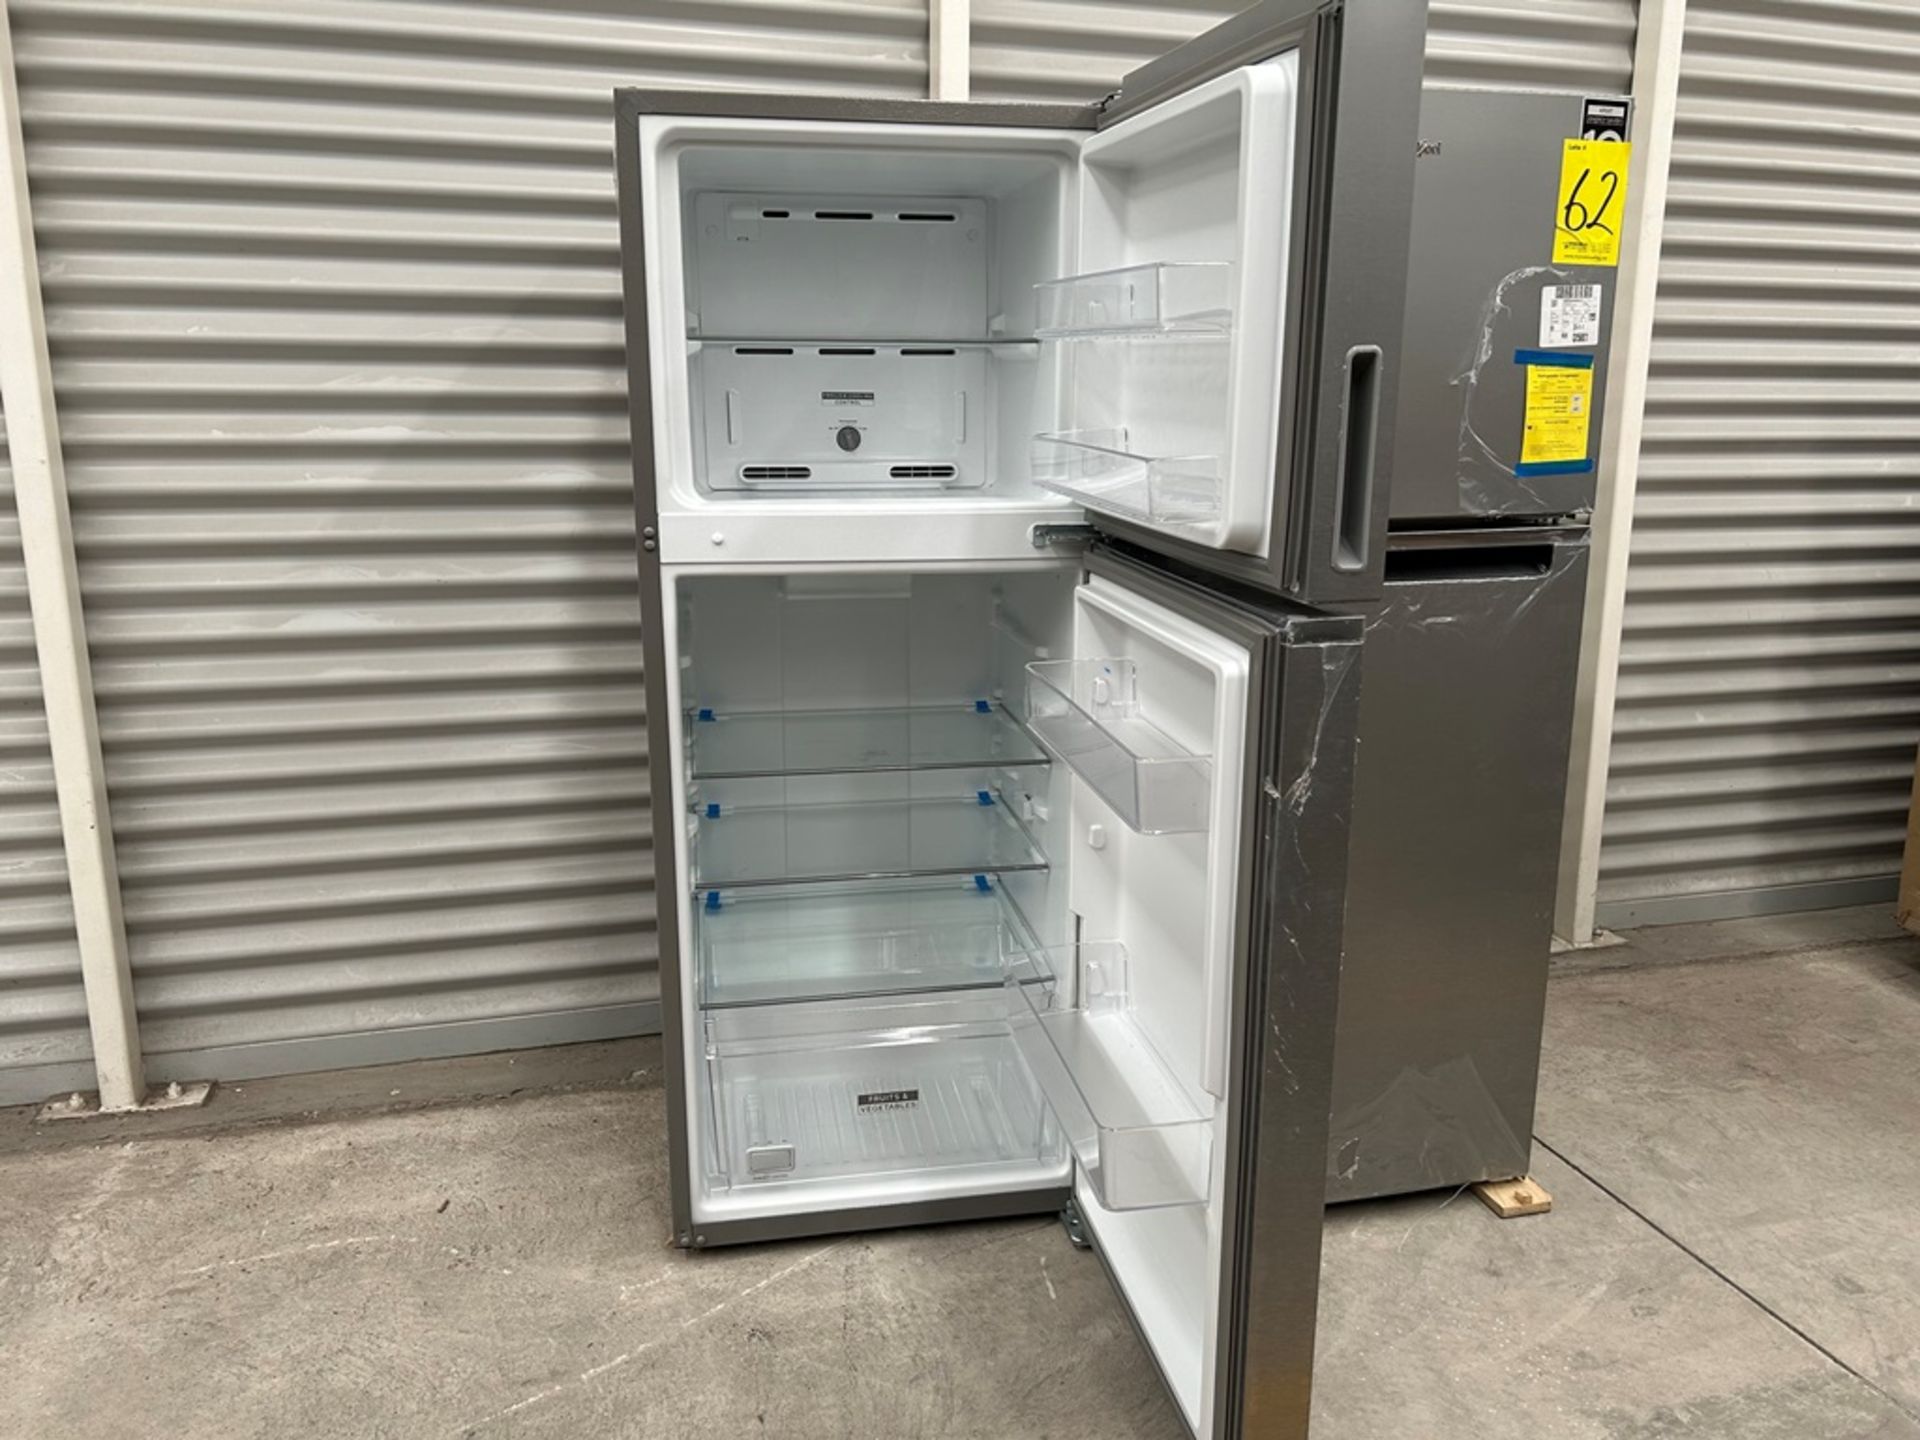 Lote de 2 refrigeradores contiene: 1 Refrigerador Marca WHIRPOOL, Modelo WT1230K, Serie 91306, Colo - Image 4 of 17